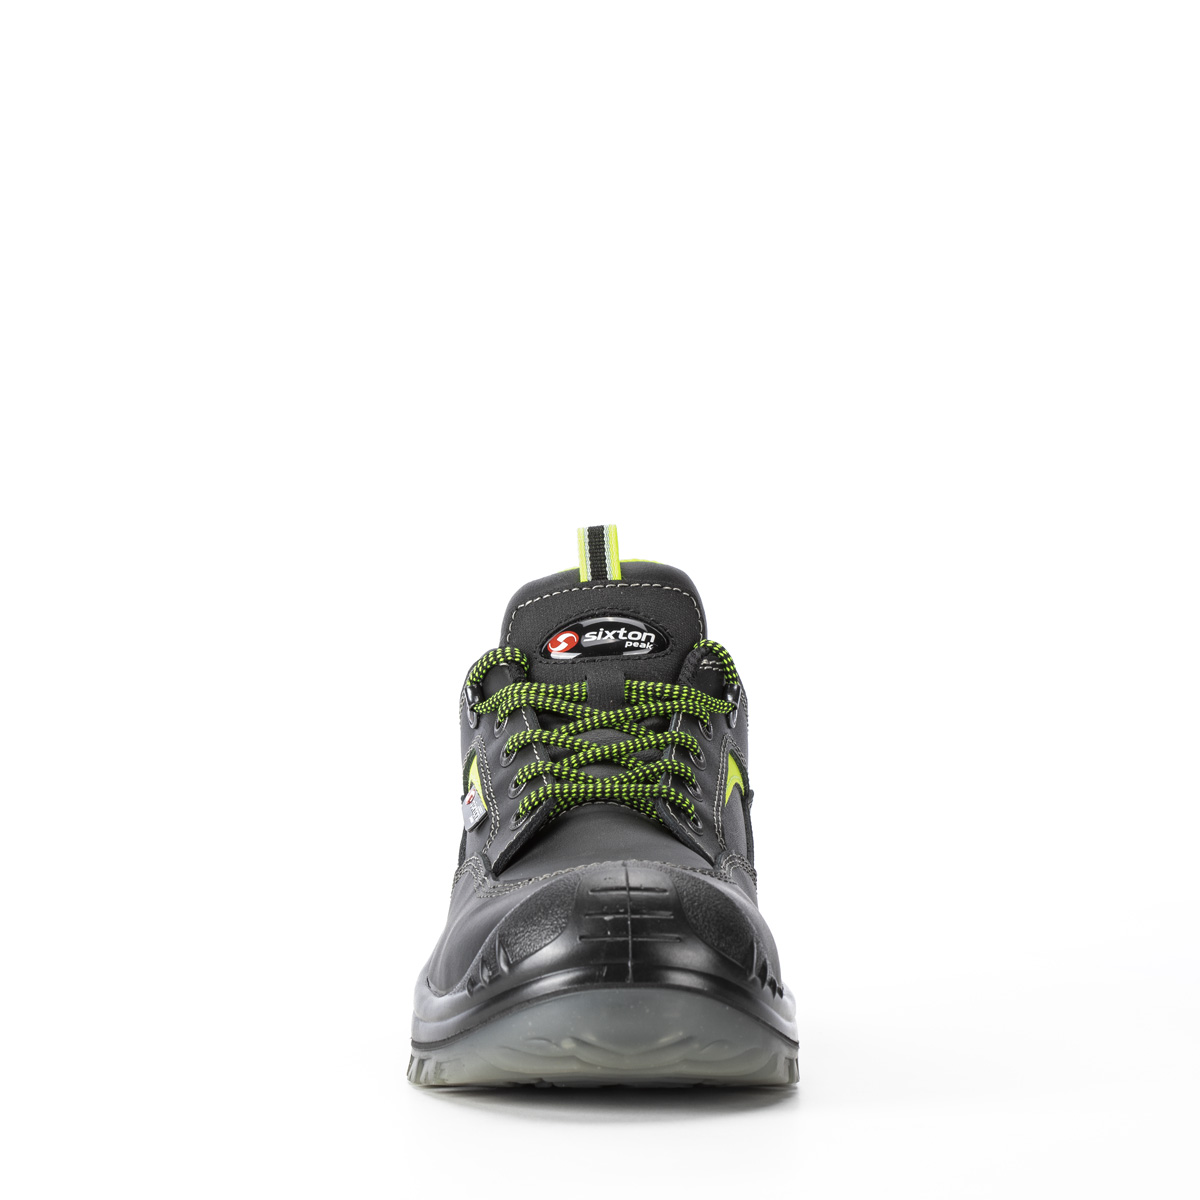 Endurance LAND - Chaussure con classe di protezione S3 SRC - Codice modello  81153-18L Sixton Peak Safety Shoes